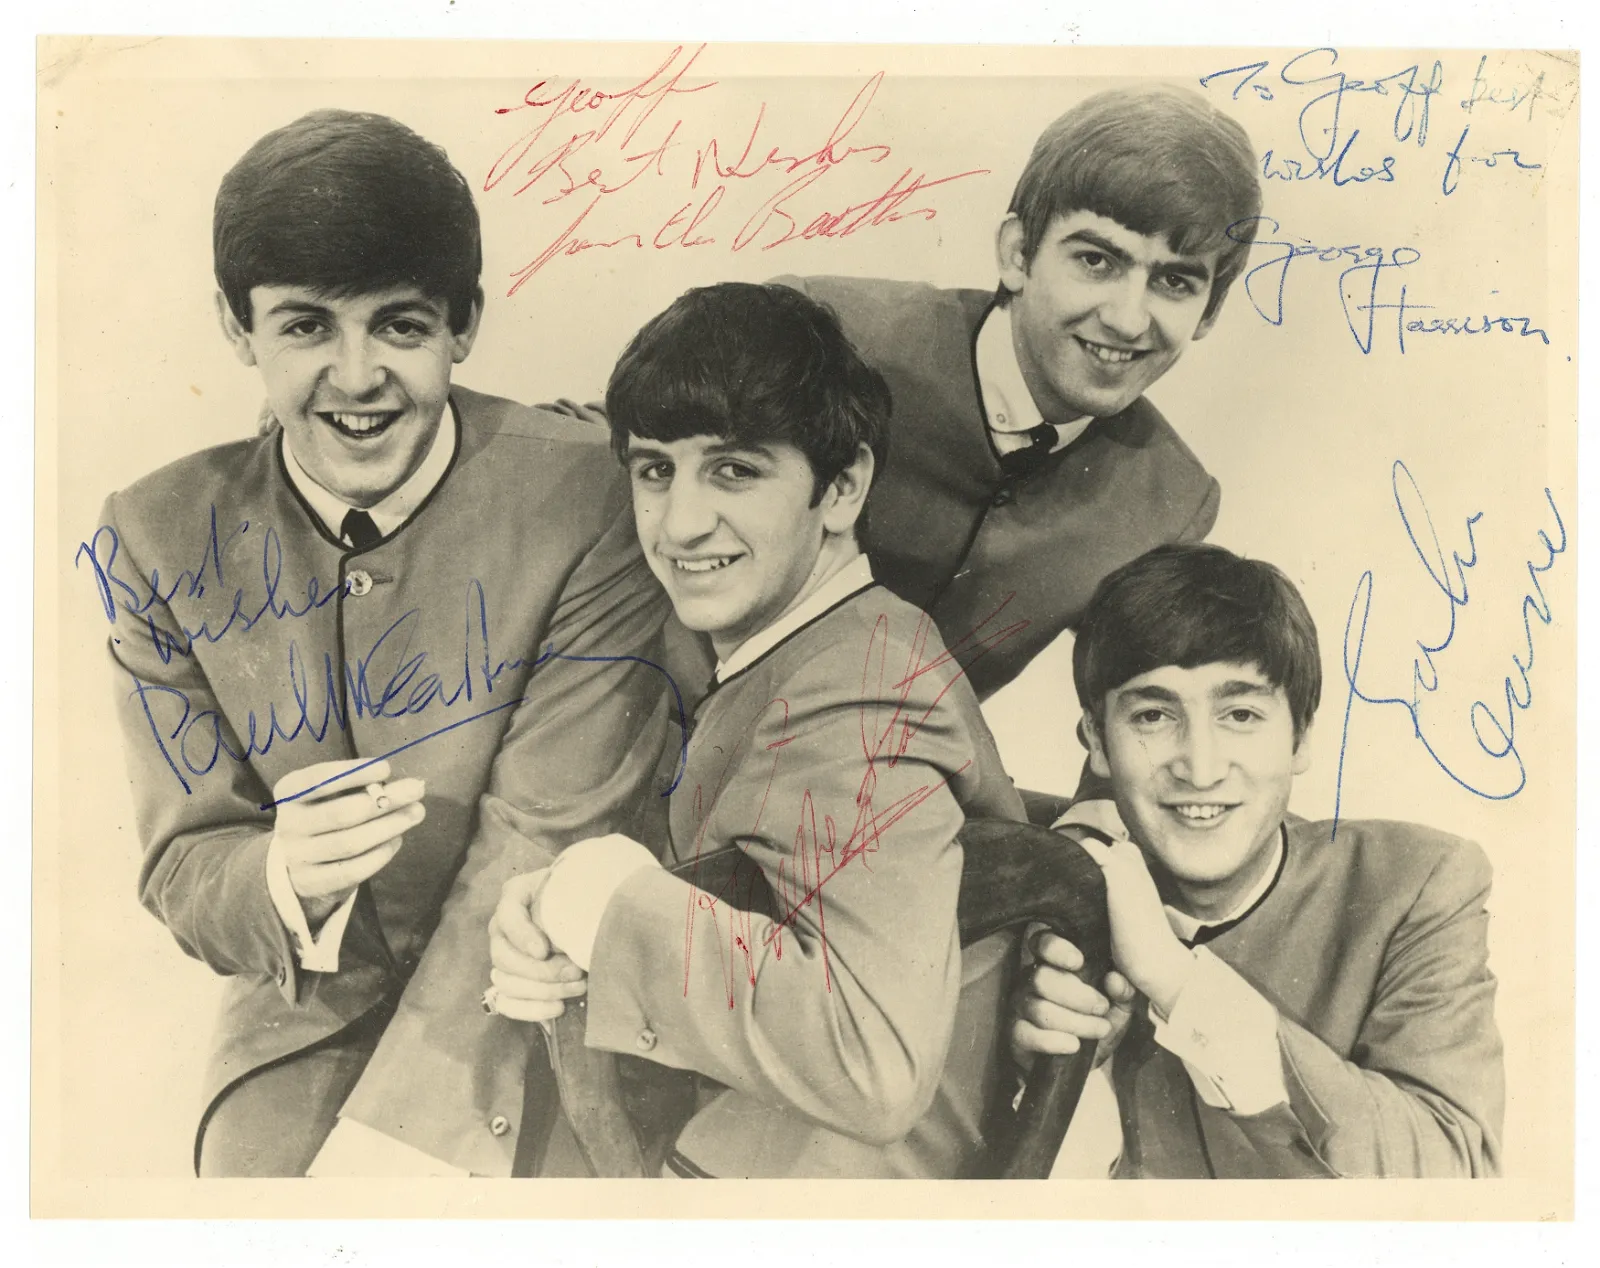 Beatles signed photo